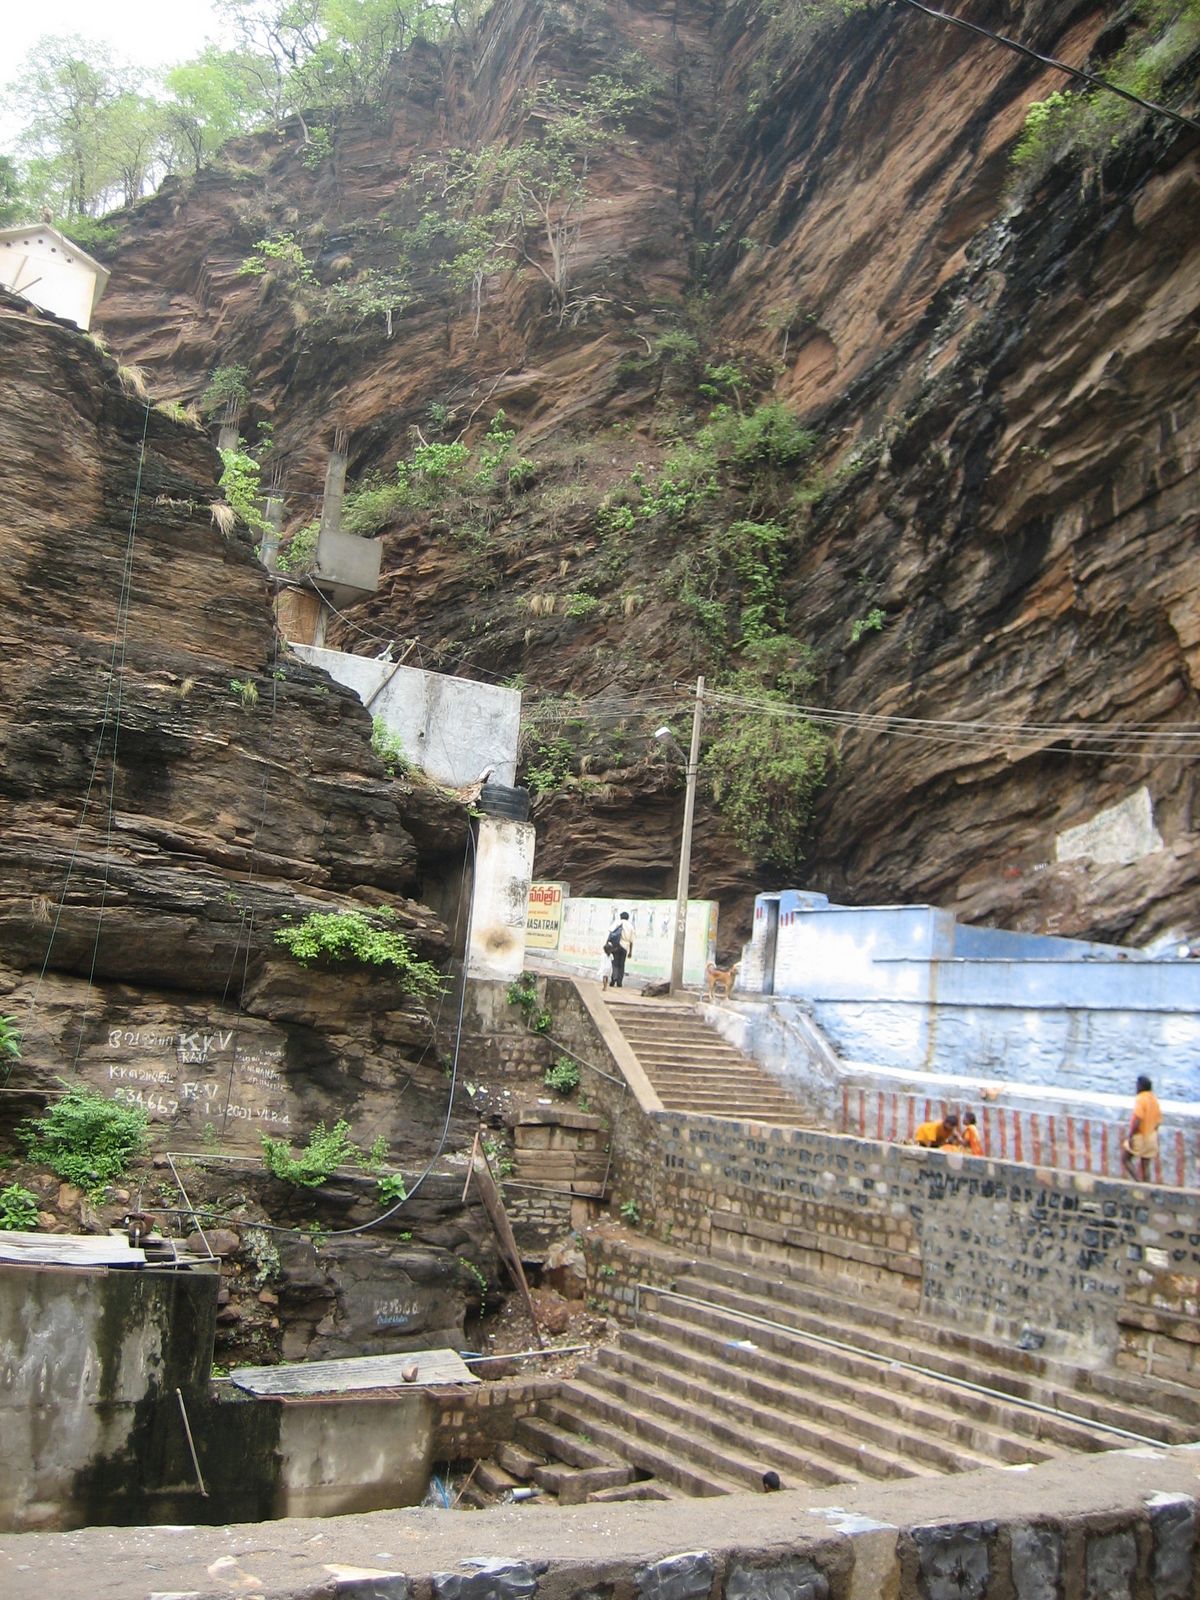 Ahobila Narasimha Swamy Temple